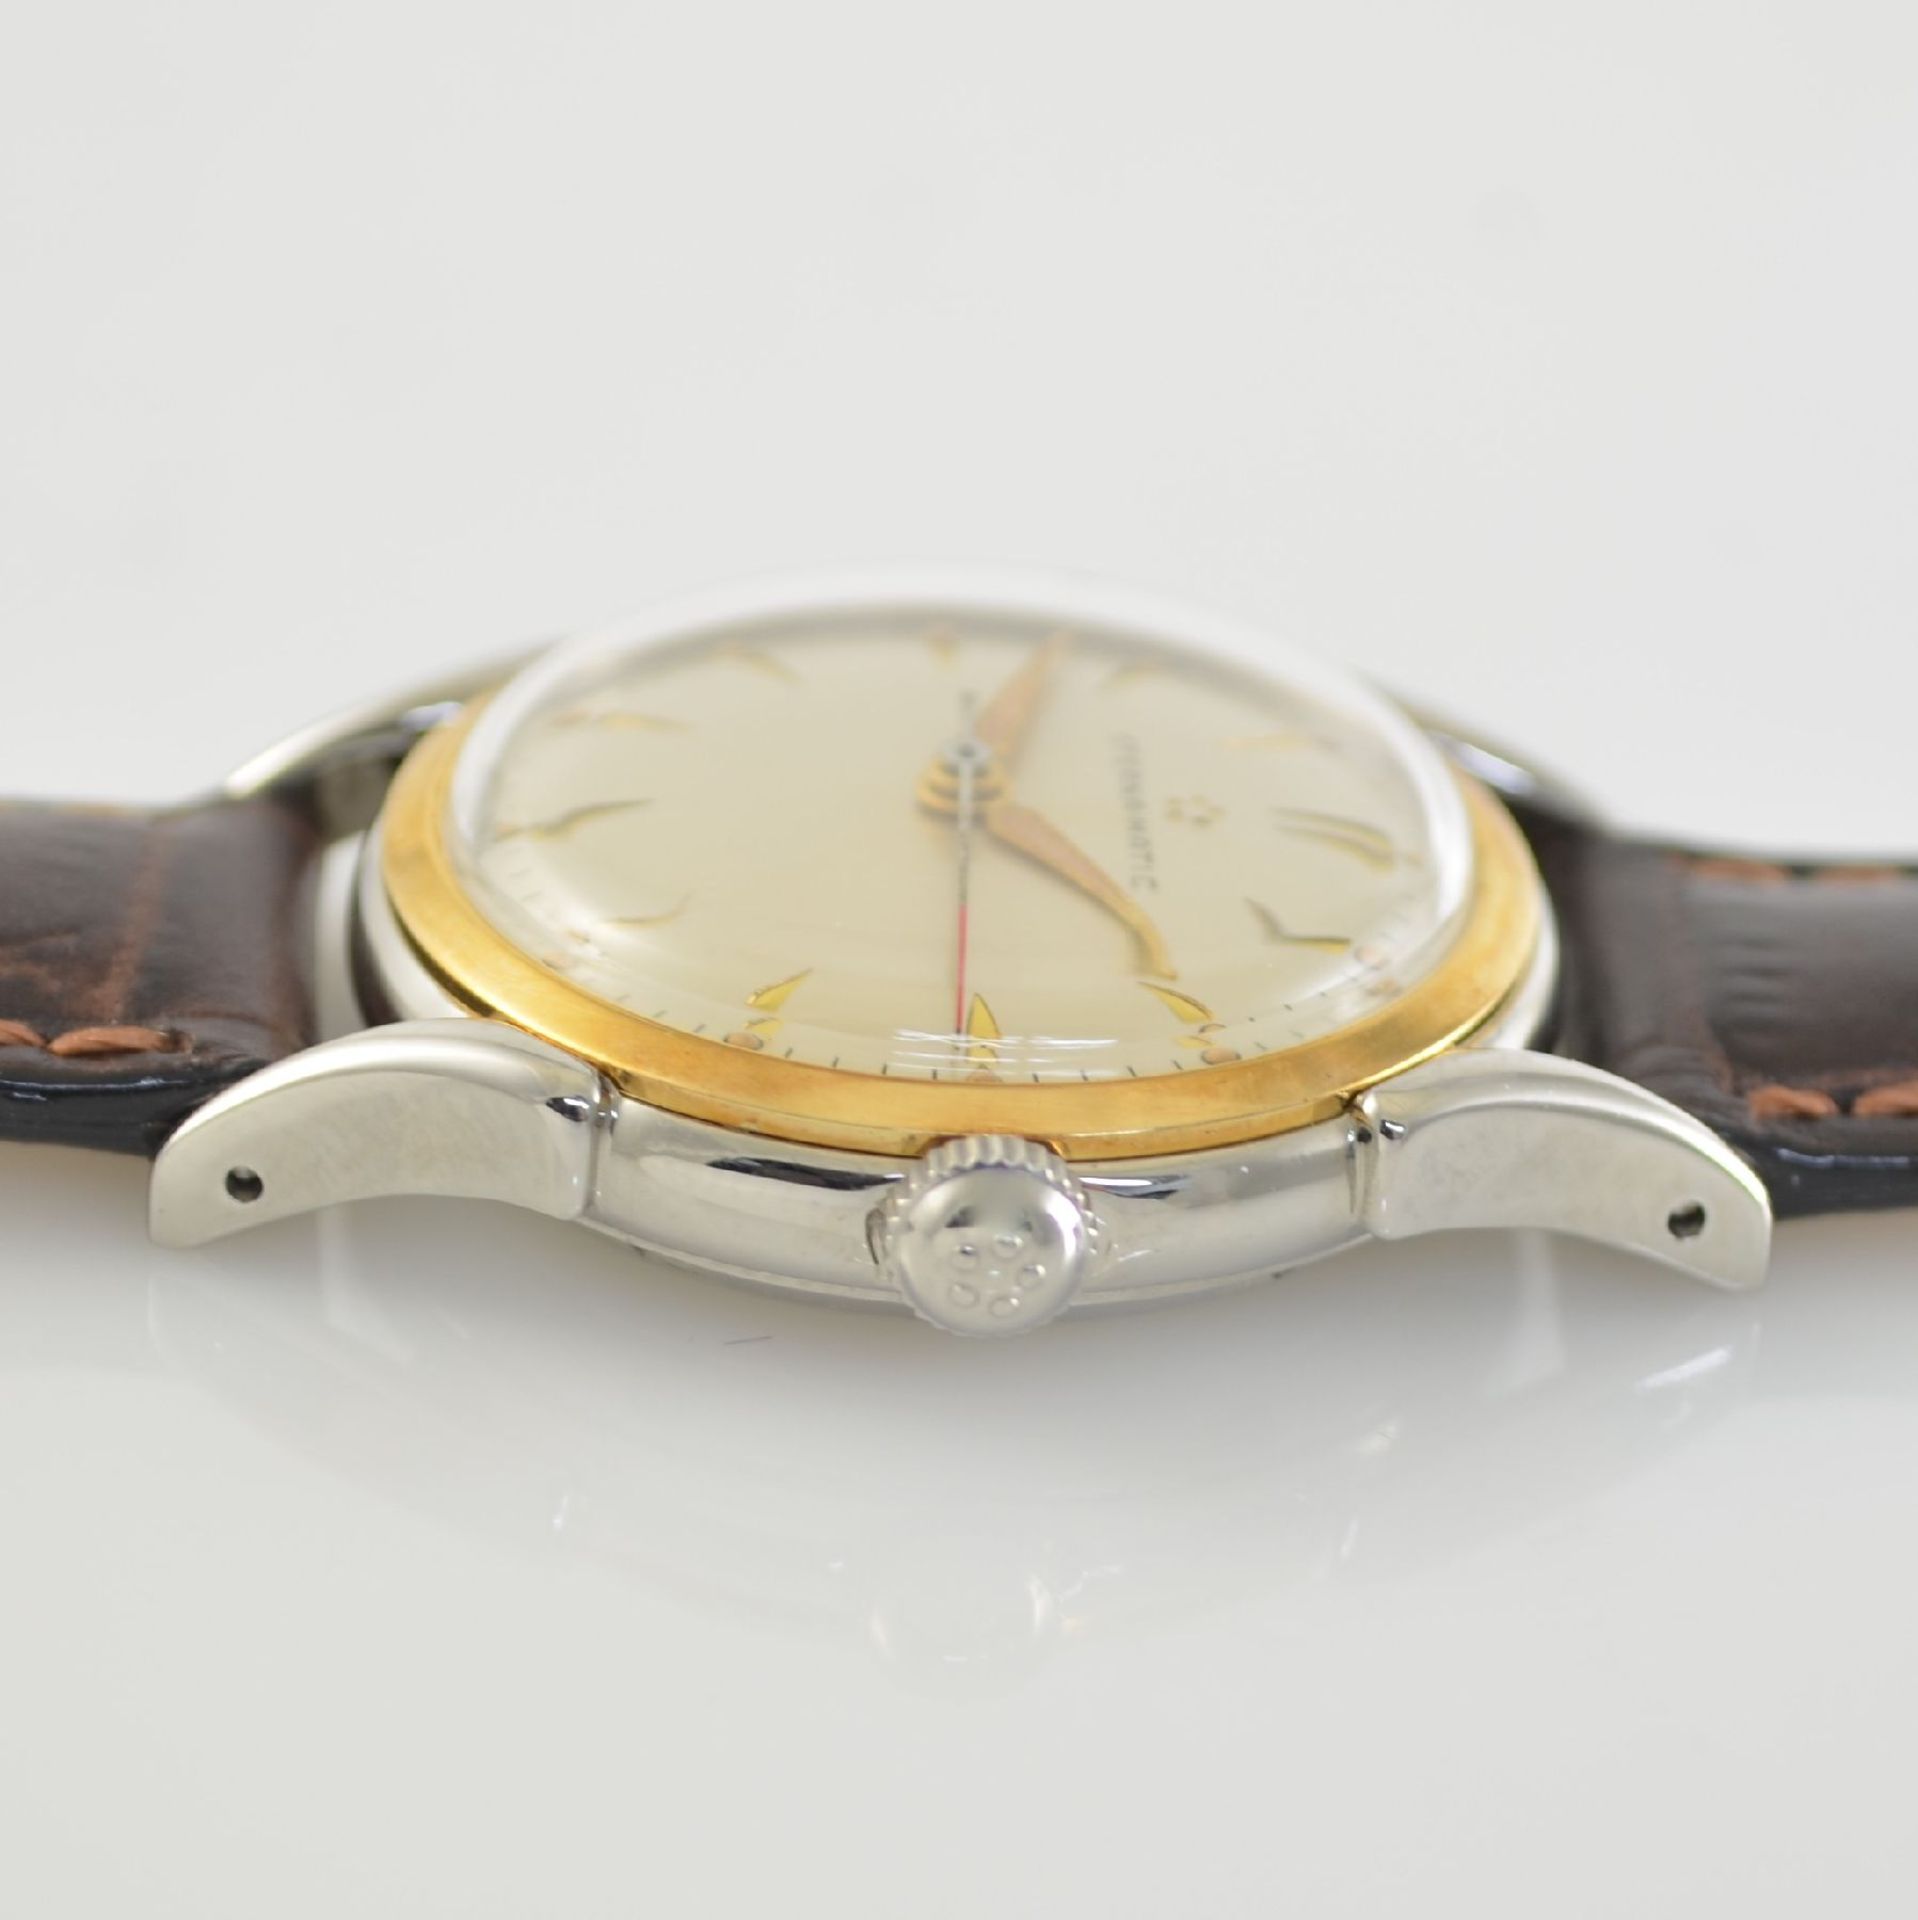 ETERNA-MATIC 2 wristwatches in steel & steel/ gold, Switzerland around 1955, self winding, 1 x - Bild 3 aus 12